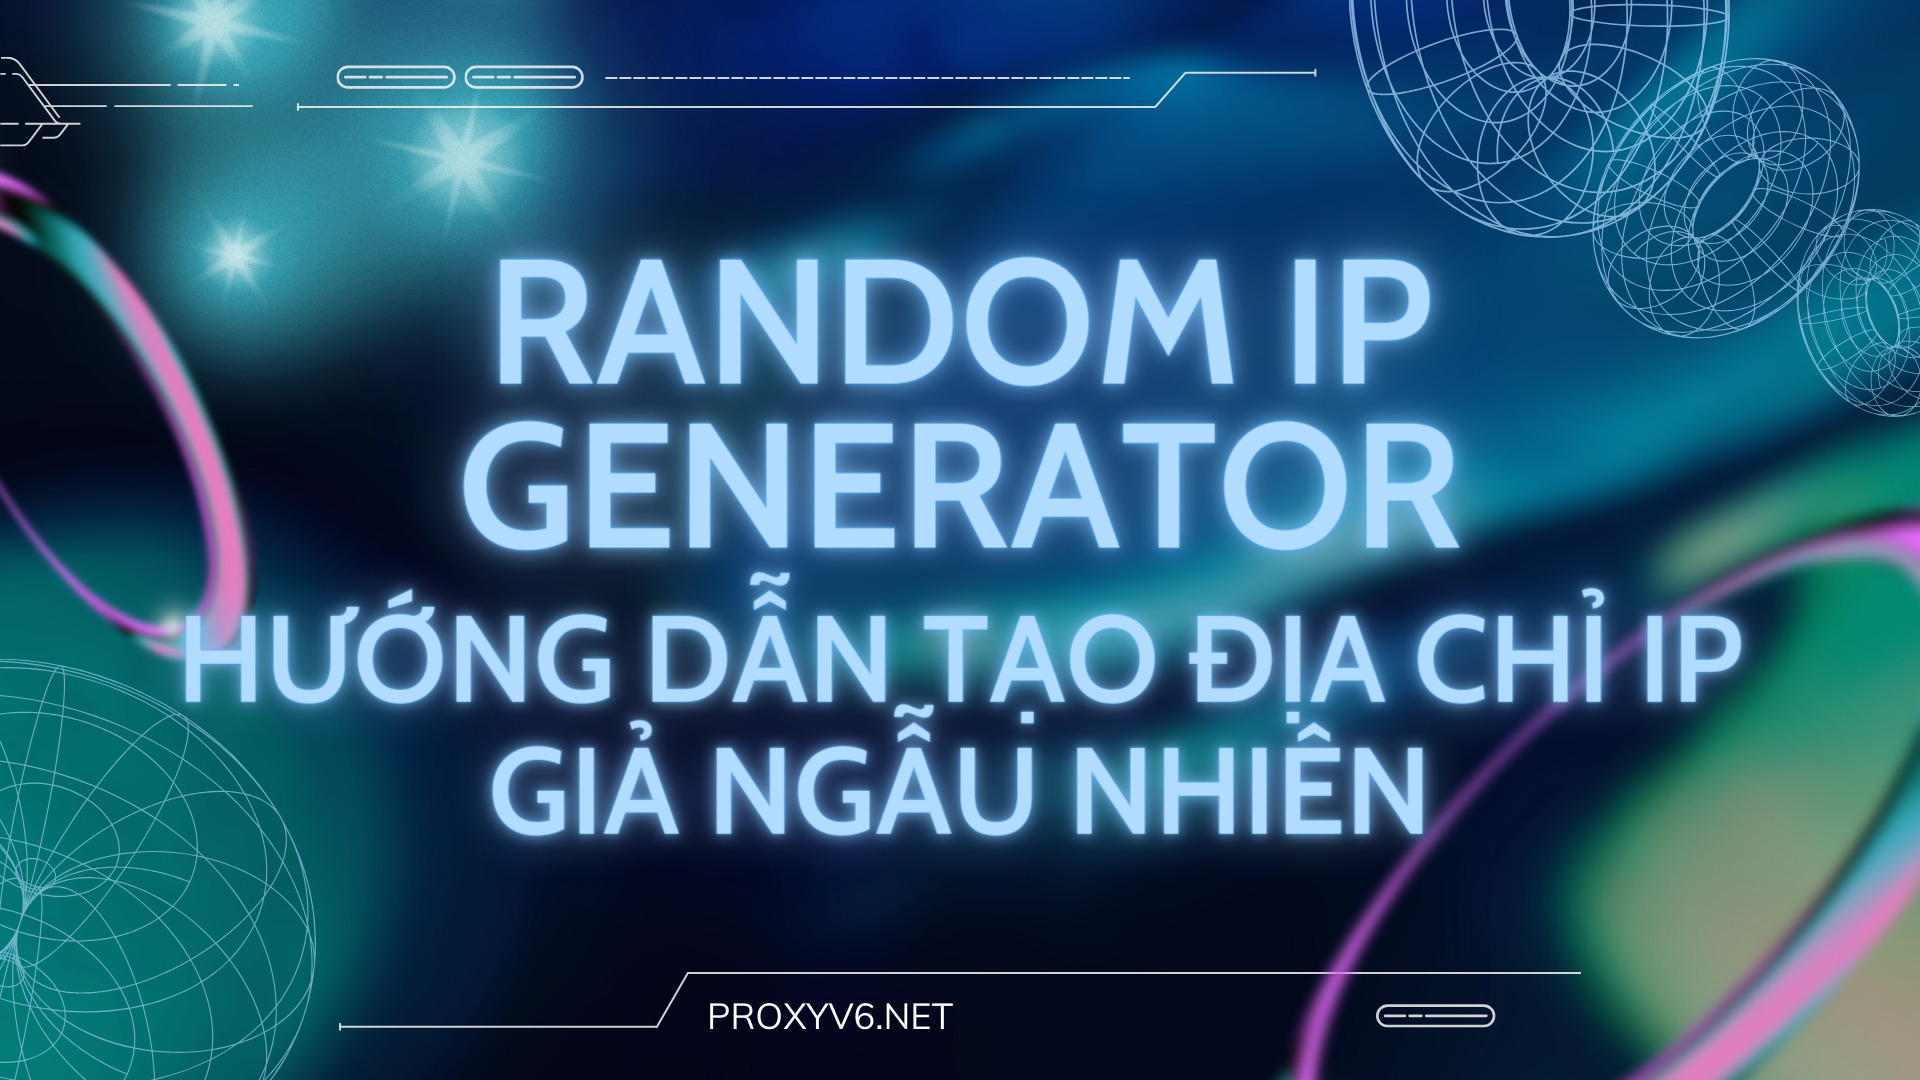 Random IP Generator – Hướng dẫn tạo địa chỉ IP giả ngẫu nhiên